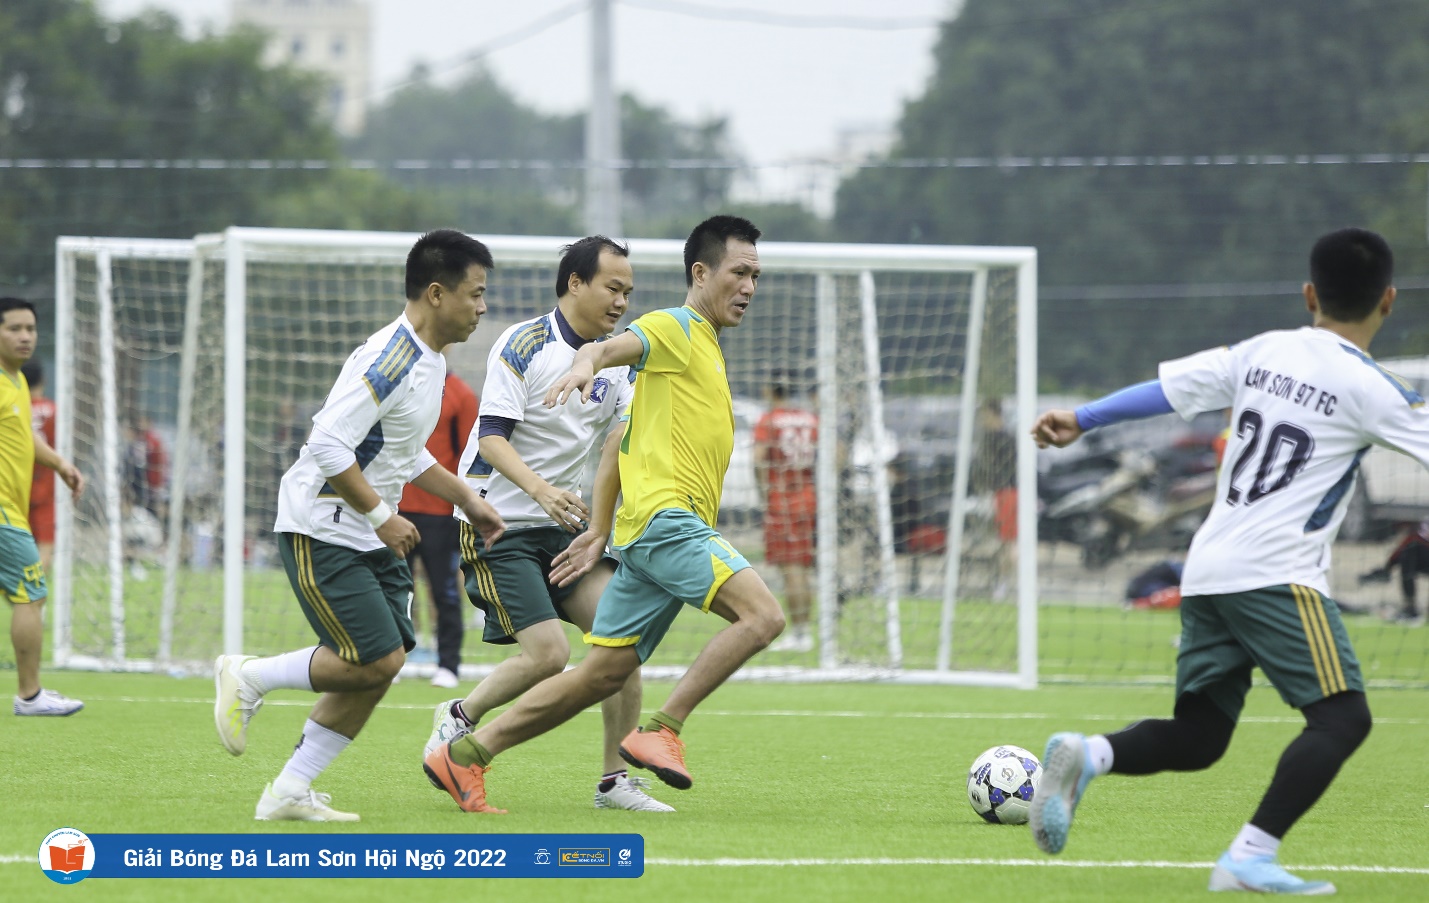 Giải bóng đá Cúp Lam Sơn hội ngộ 2022 thành công tốt đẹp - Ảnh 3.